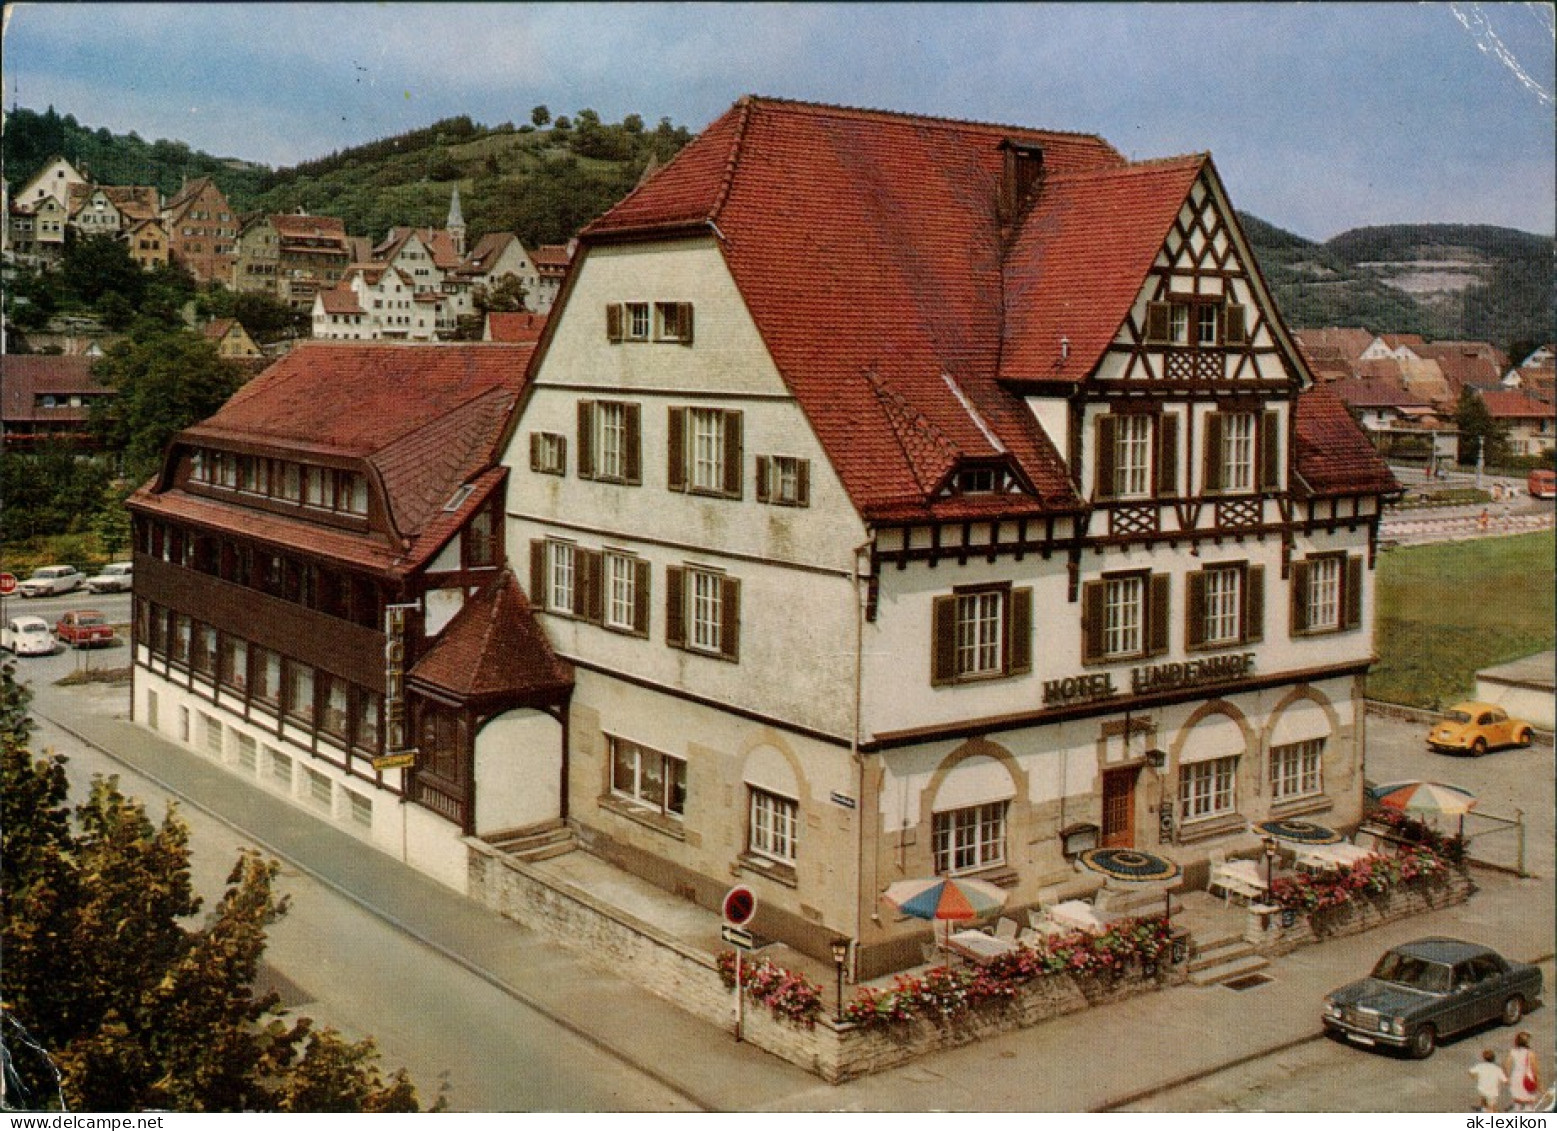 Horb Am Neckar Hotel-Restaurant Lindenhof Bes. E. U. A. Trick 1974 - Horb